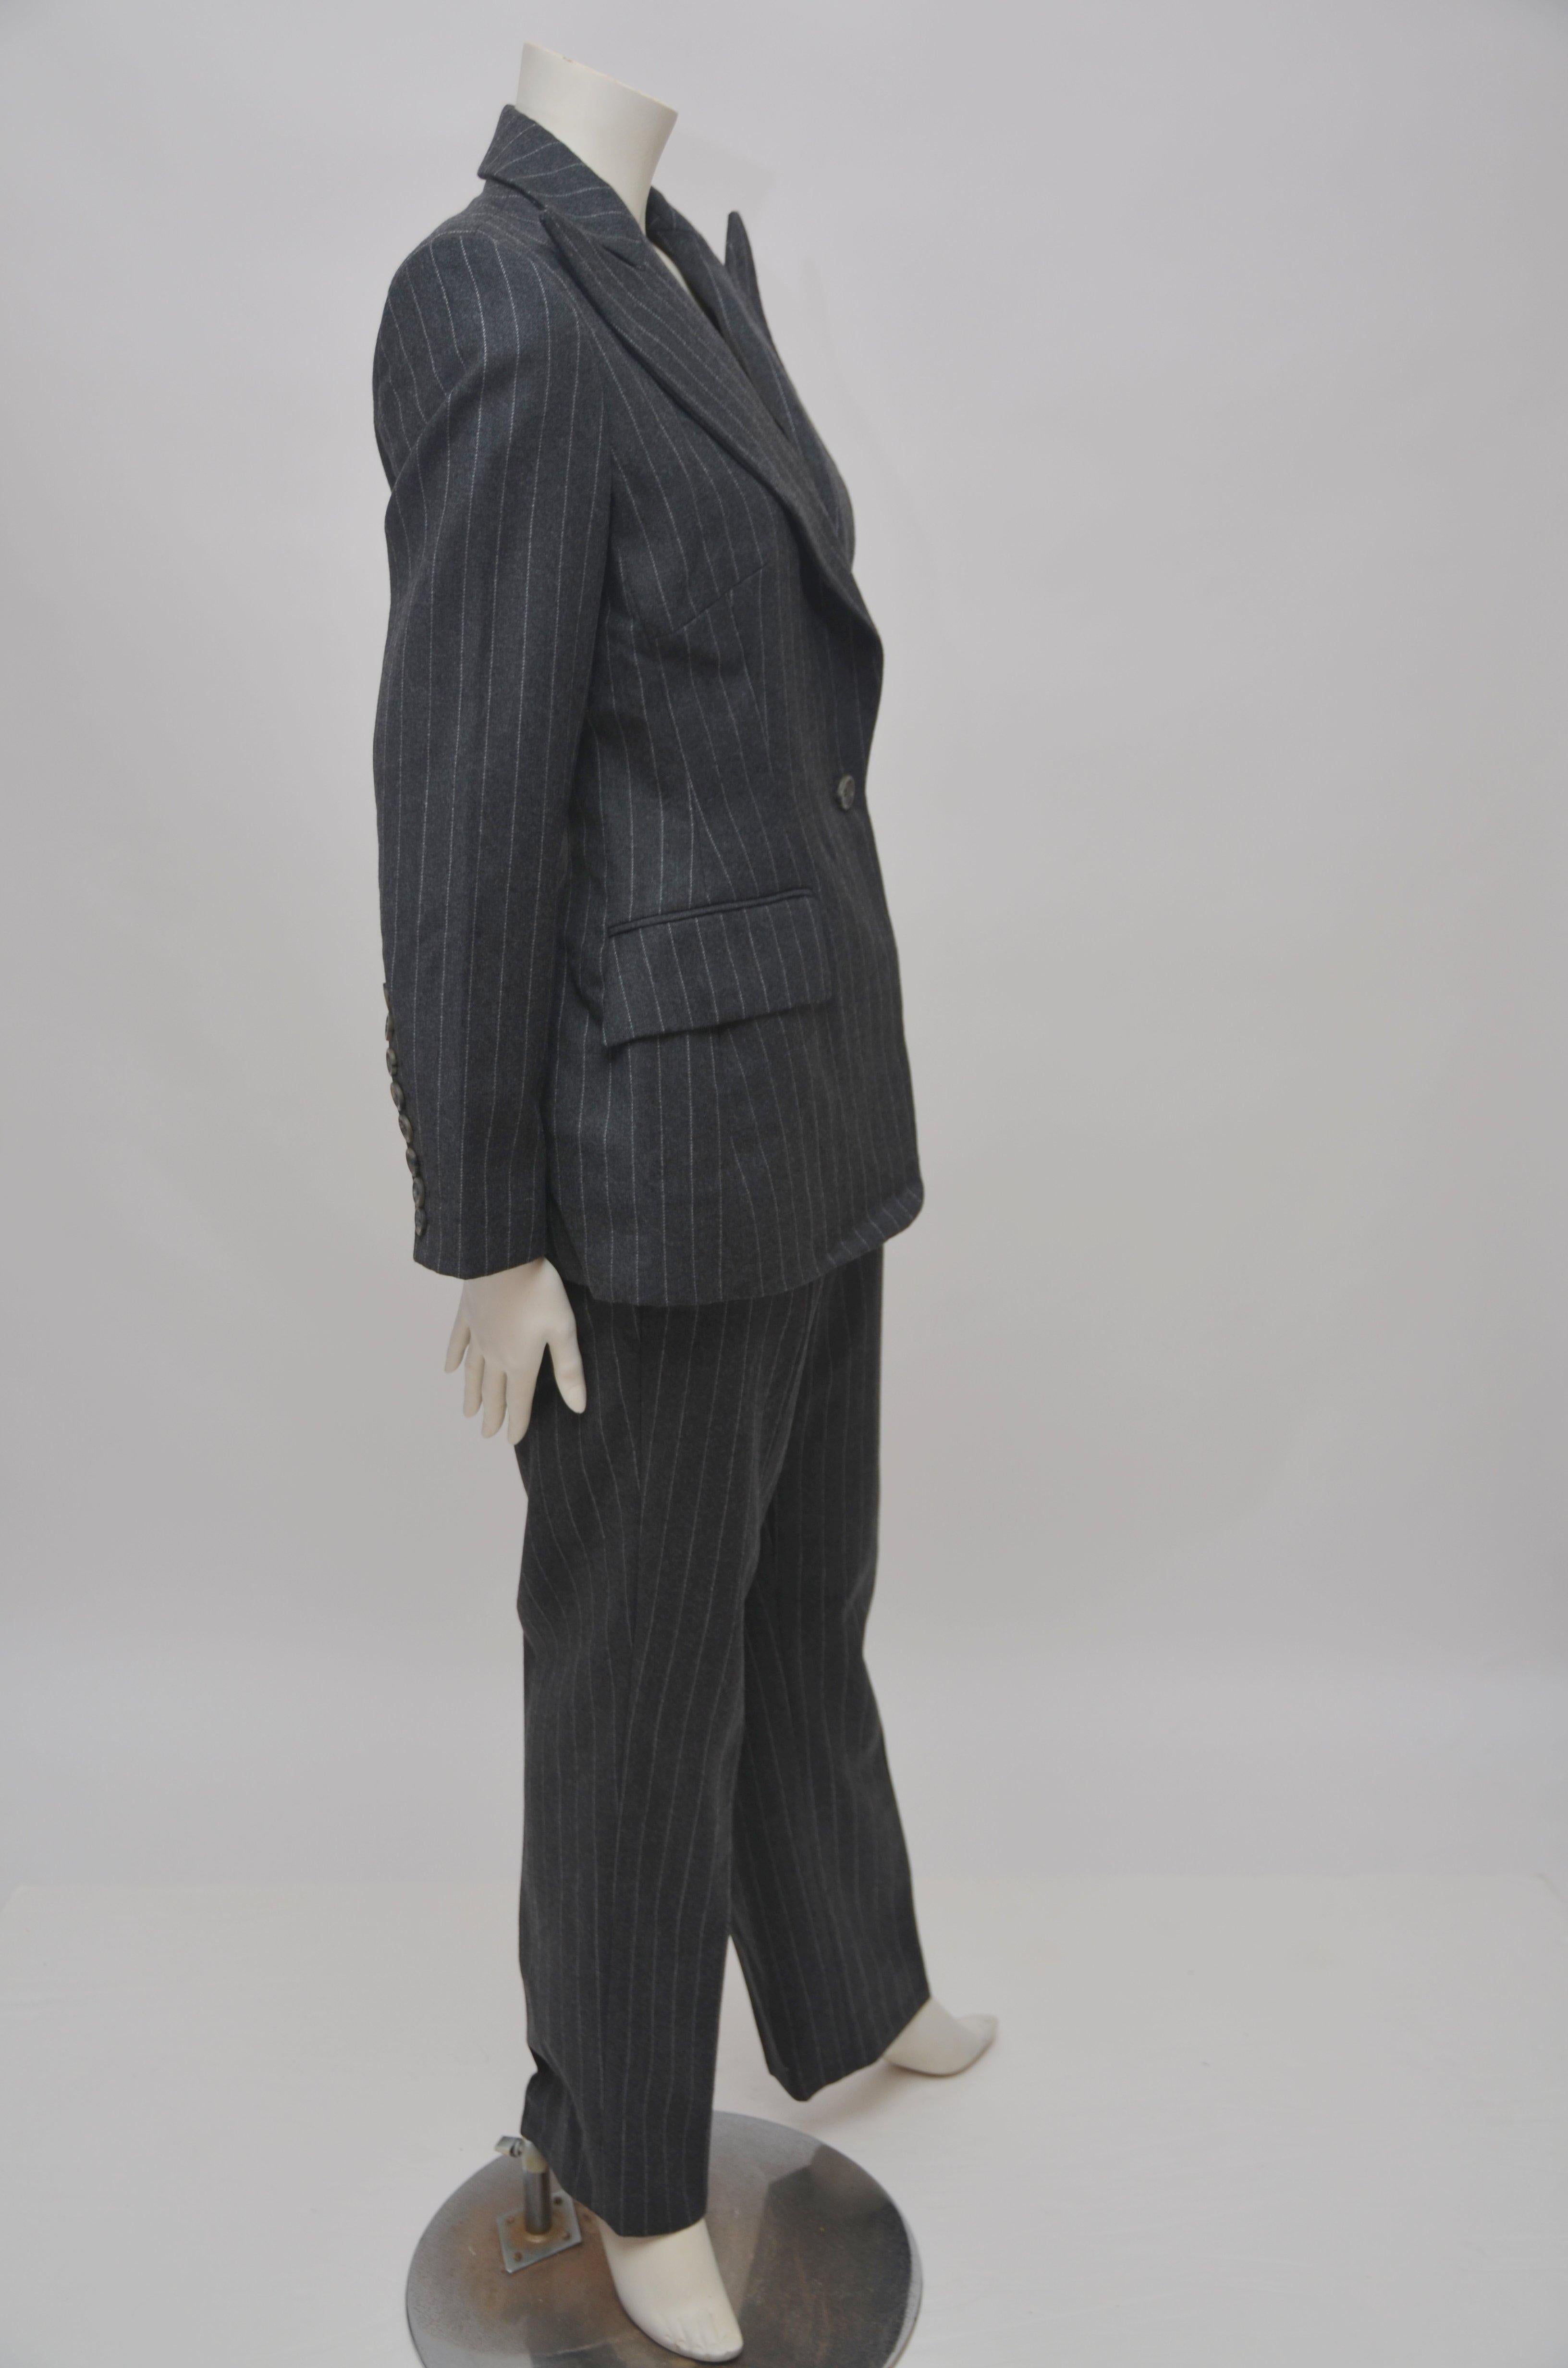 suits with alexander mcqueen's